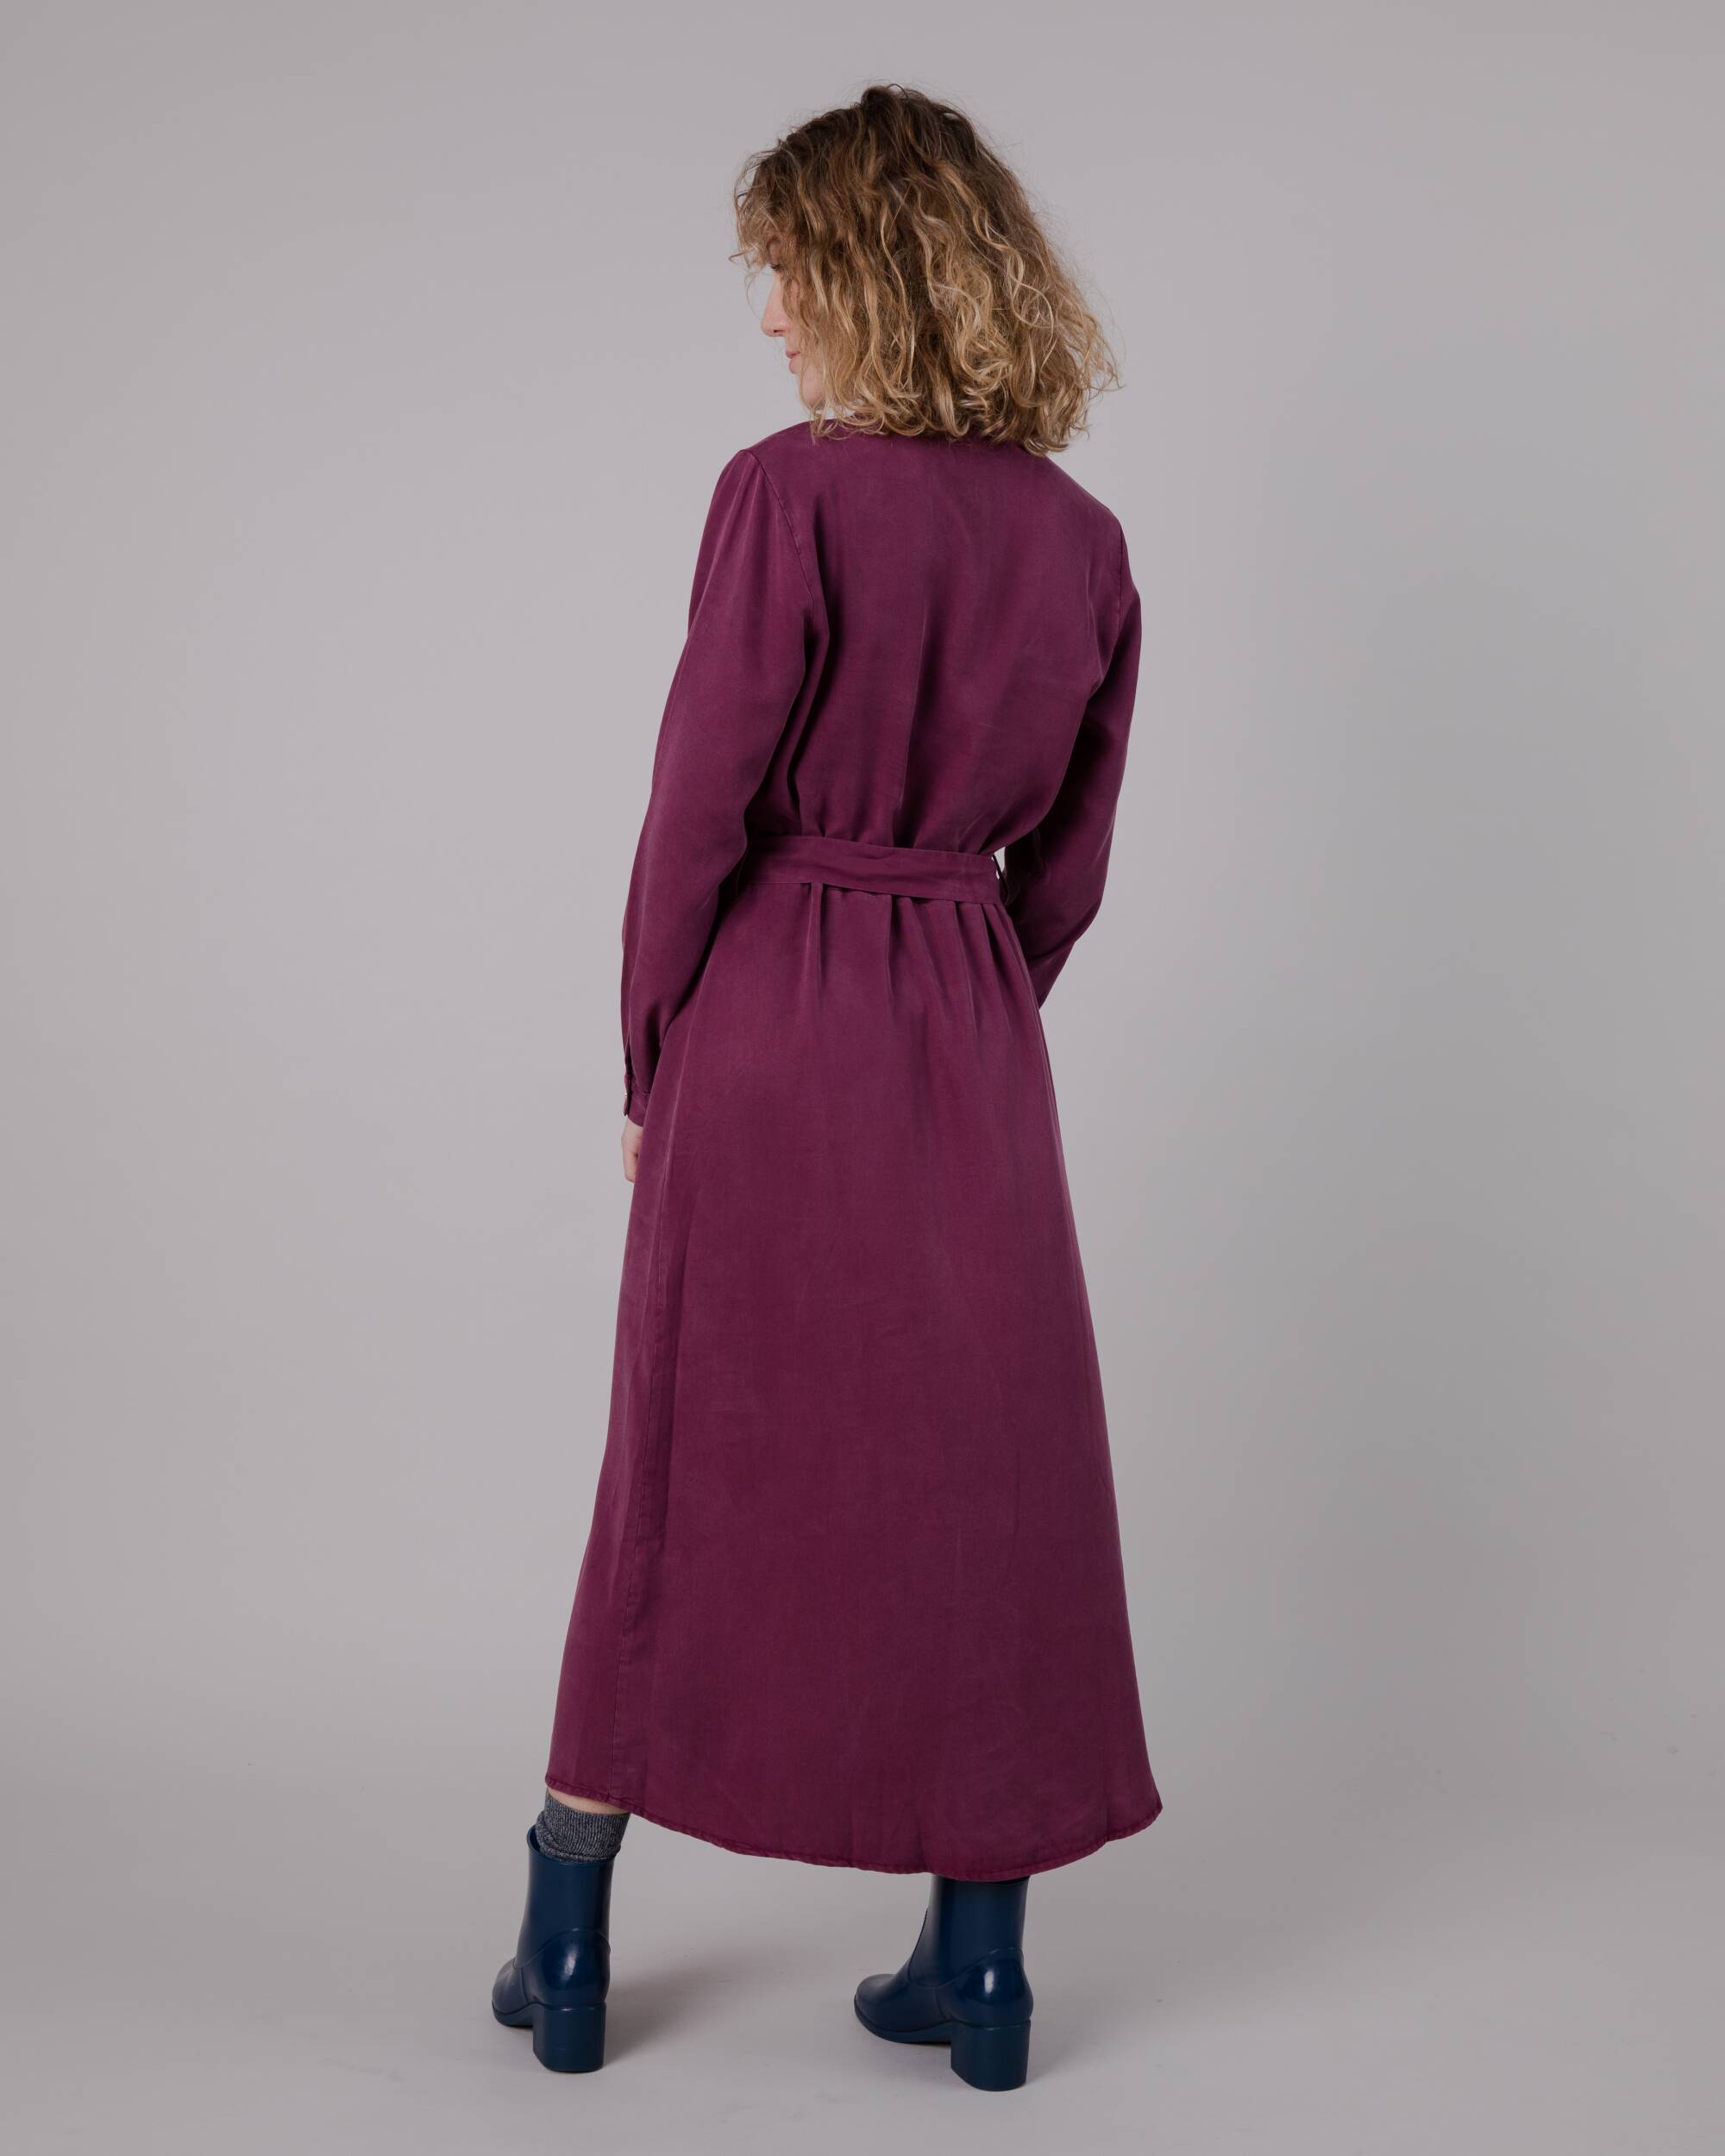 Violettes Kleid aus Tencel von Brava Fabrics